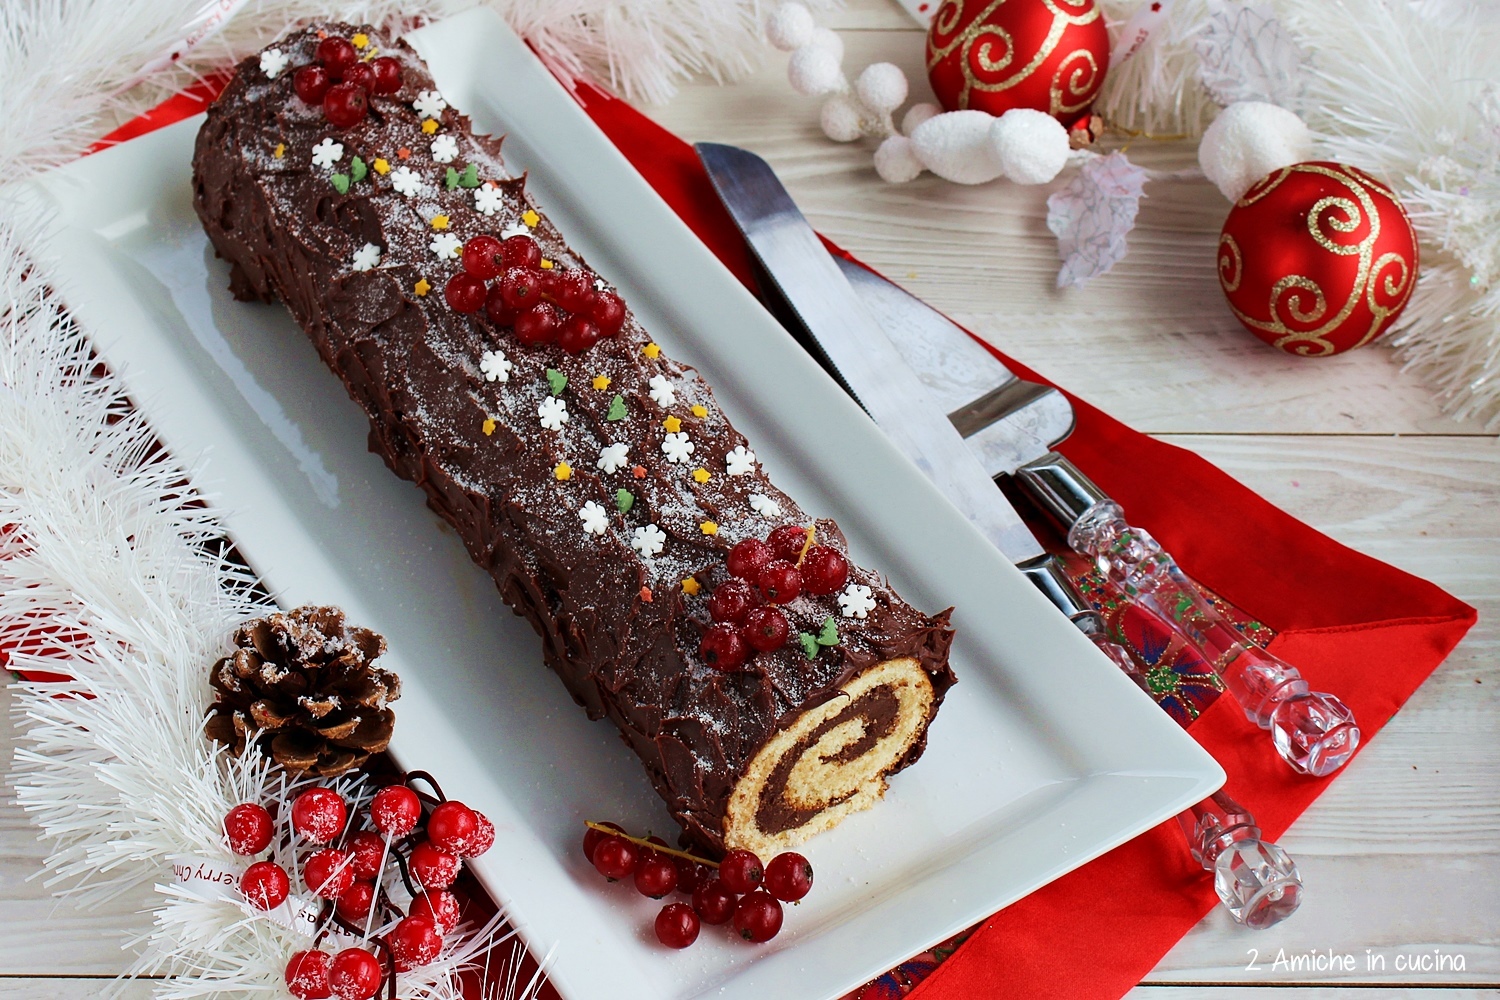 Tronchetto Di Natale Ricetta.Tronchetto Al Cioccolato Buche De Noel 2 Amiche In Cucina